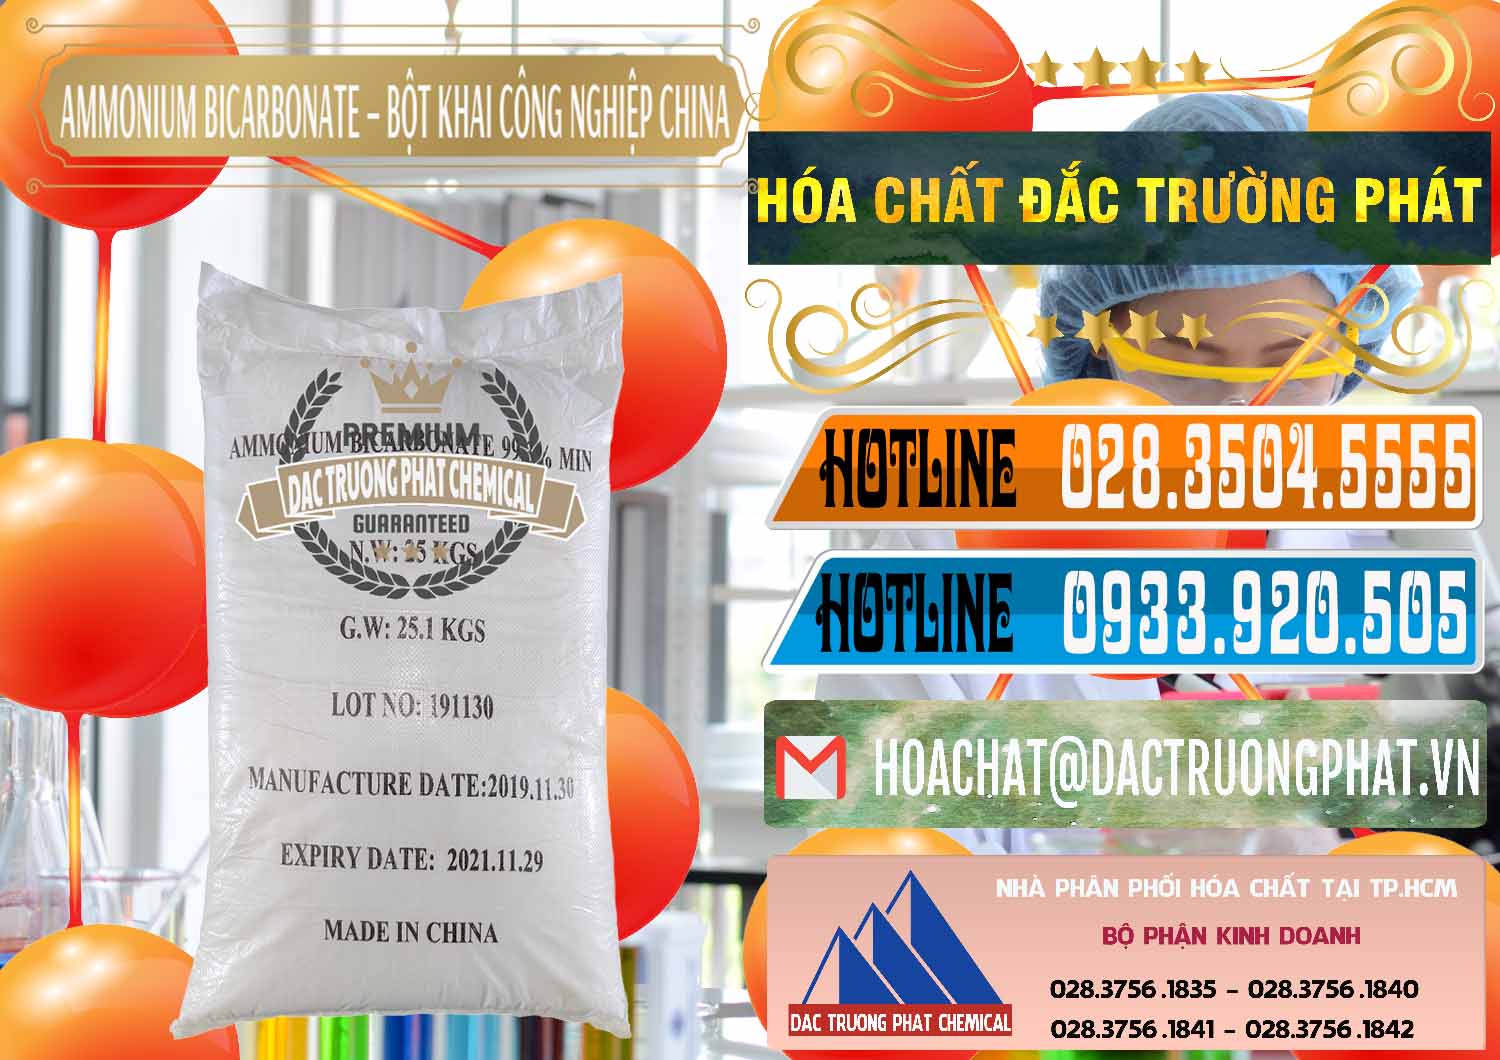 Đơn vị chuyên kinh doanh - bán Ammonium Bicarbonate – Bột Khai Công Nghiệp Trung Quốc China - 0020 - Chuyên bán - phân phối hóa chất tại TP.HCM - stmp.net